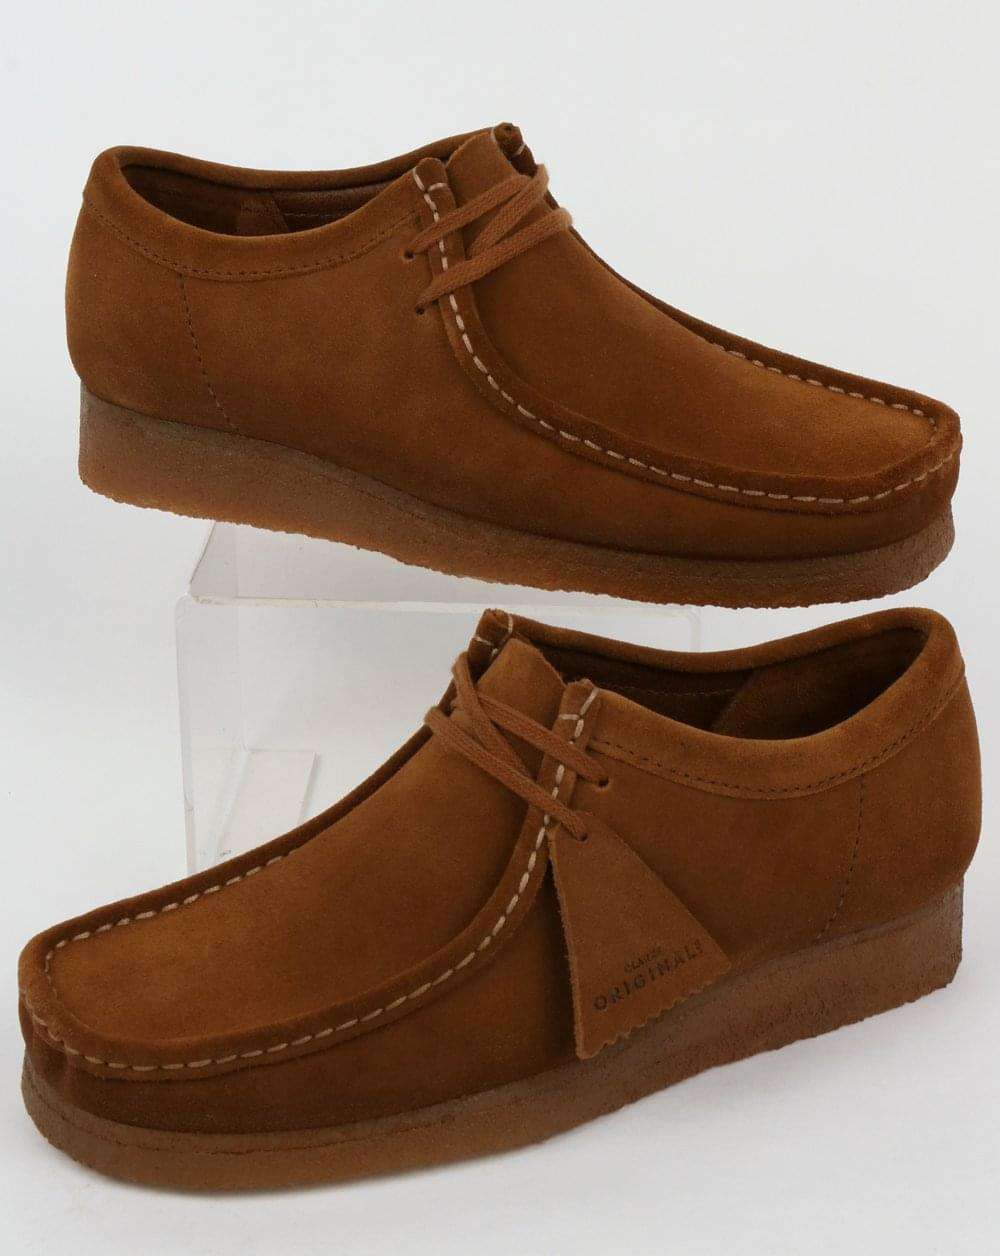 Clarks Originals Wallabee Shoes Cola Suede,brown,moccasin ...